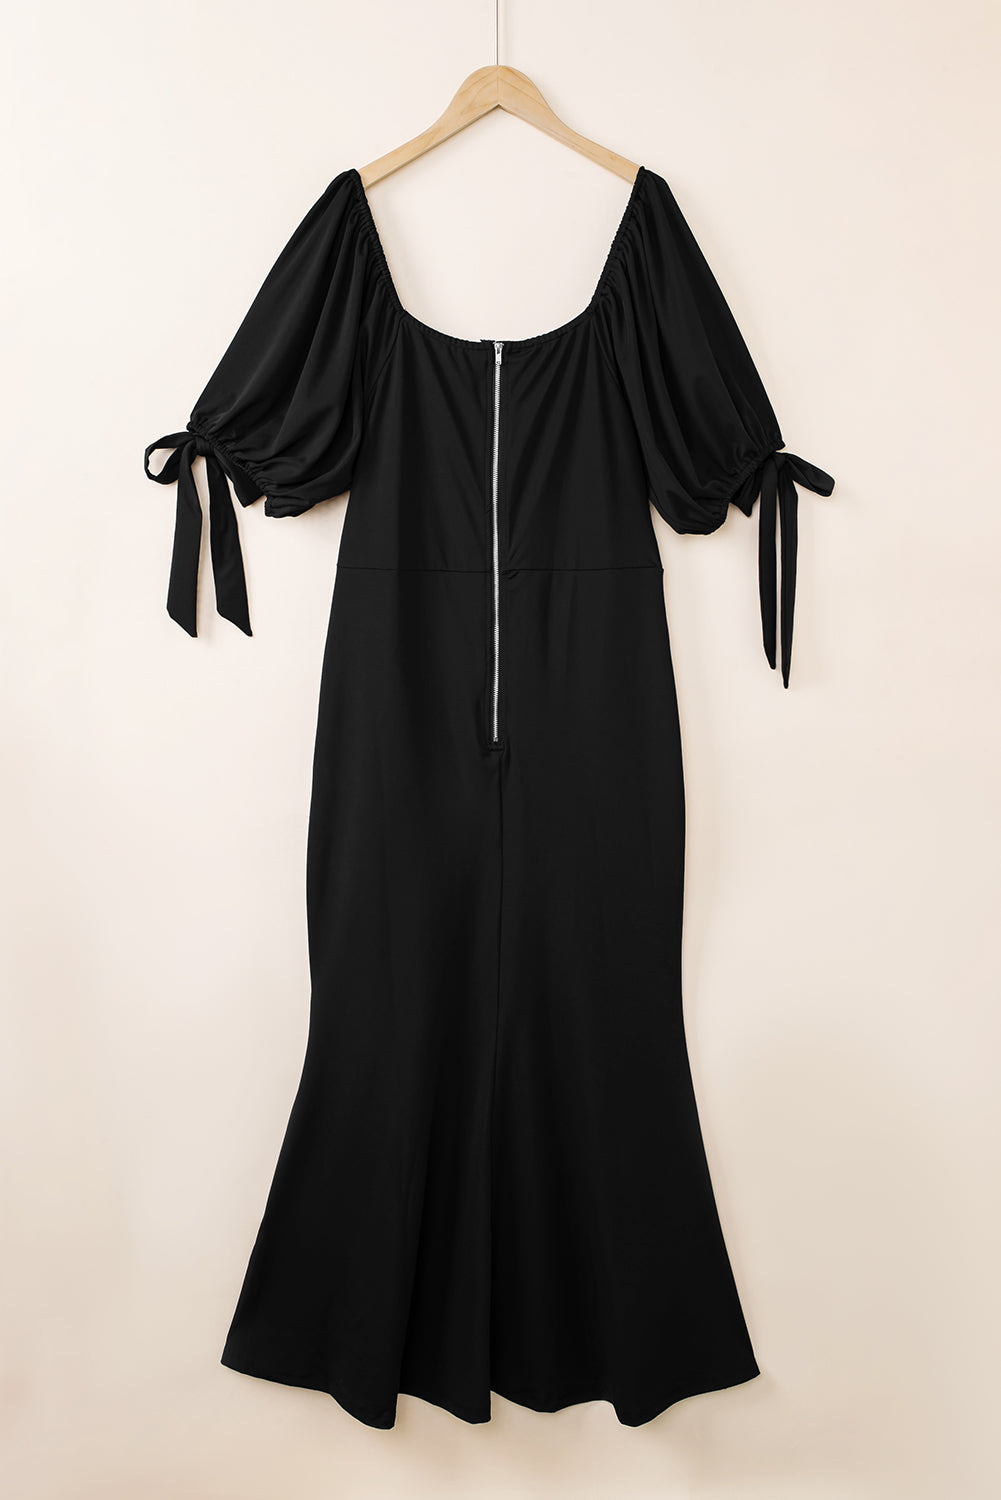 Črna maksi obleka z metuljčkom in napihnjenimi rokavi velike velikosti z visokimi razporki